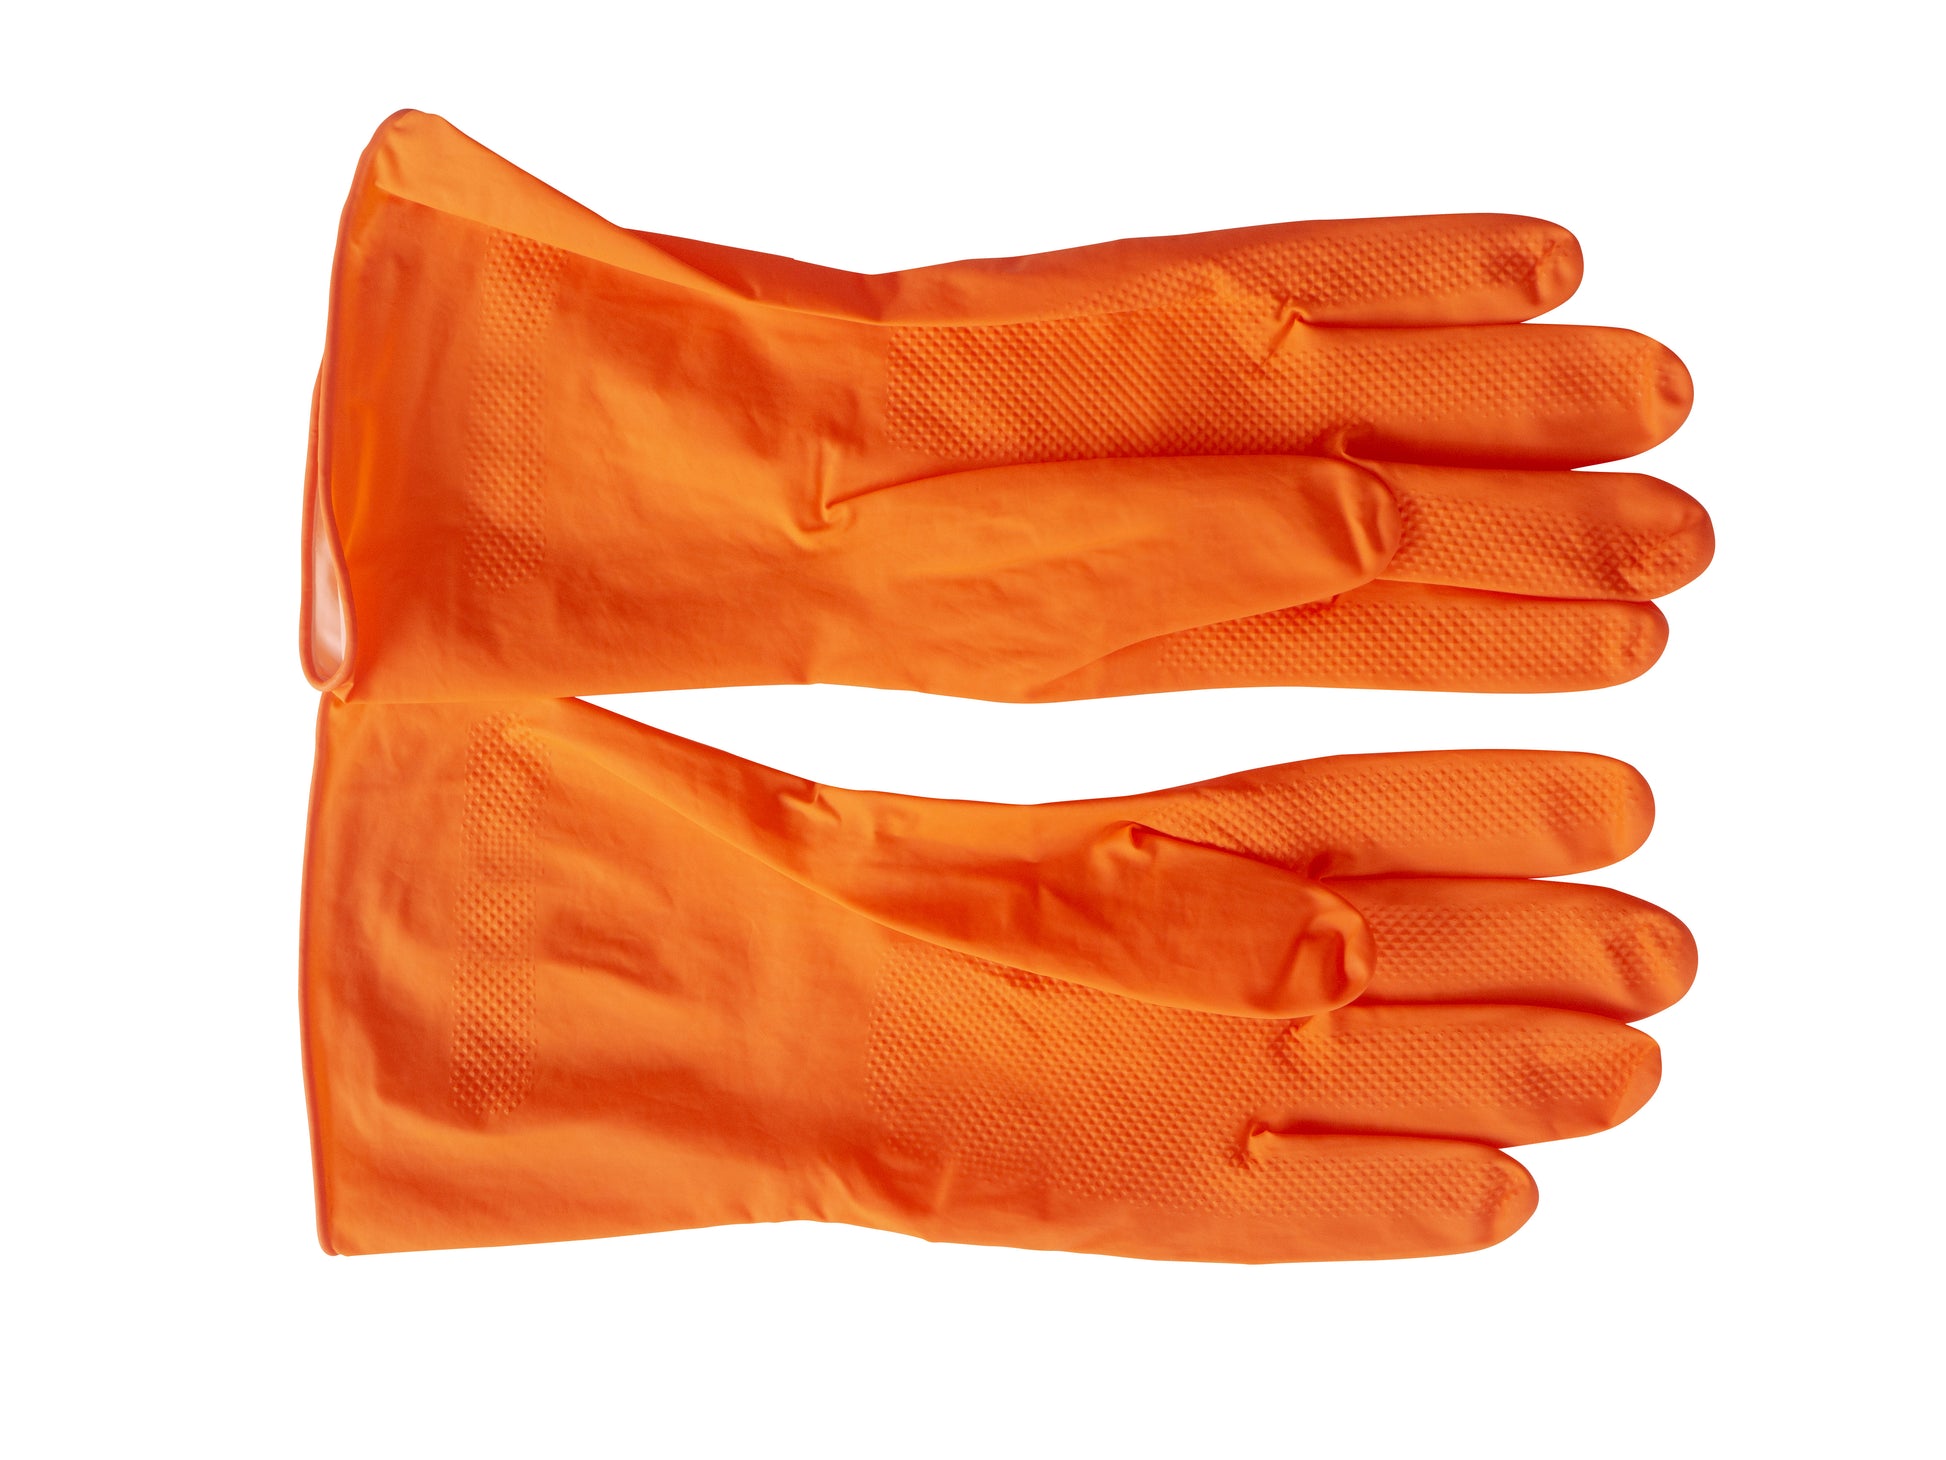 Outrageous Orange Diamond Grip Nitrile Gloves